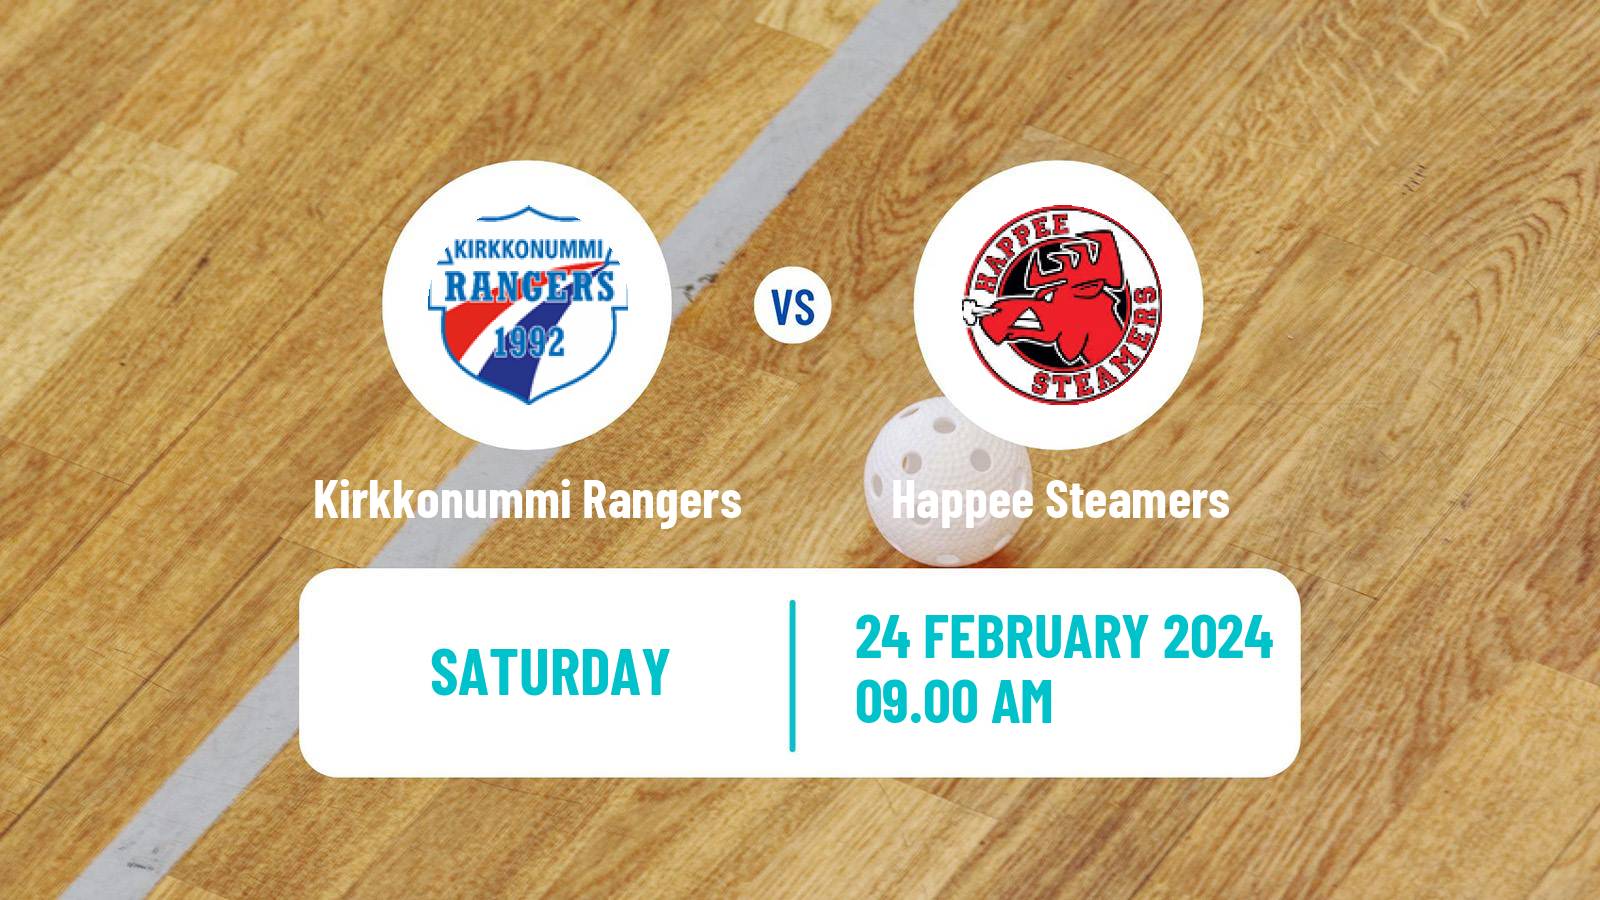 Floorball Finnish Divari Kirkkonummi Rangers - Happee Steamers